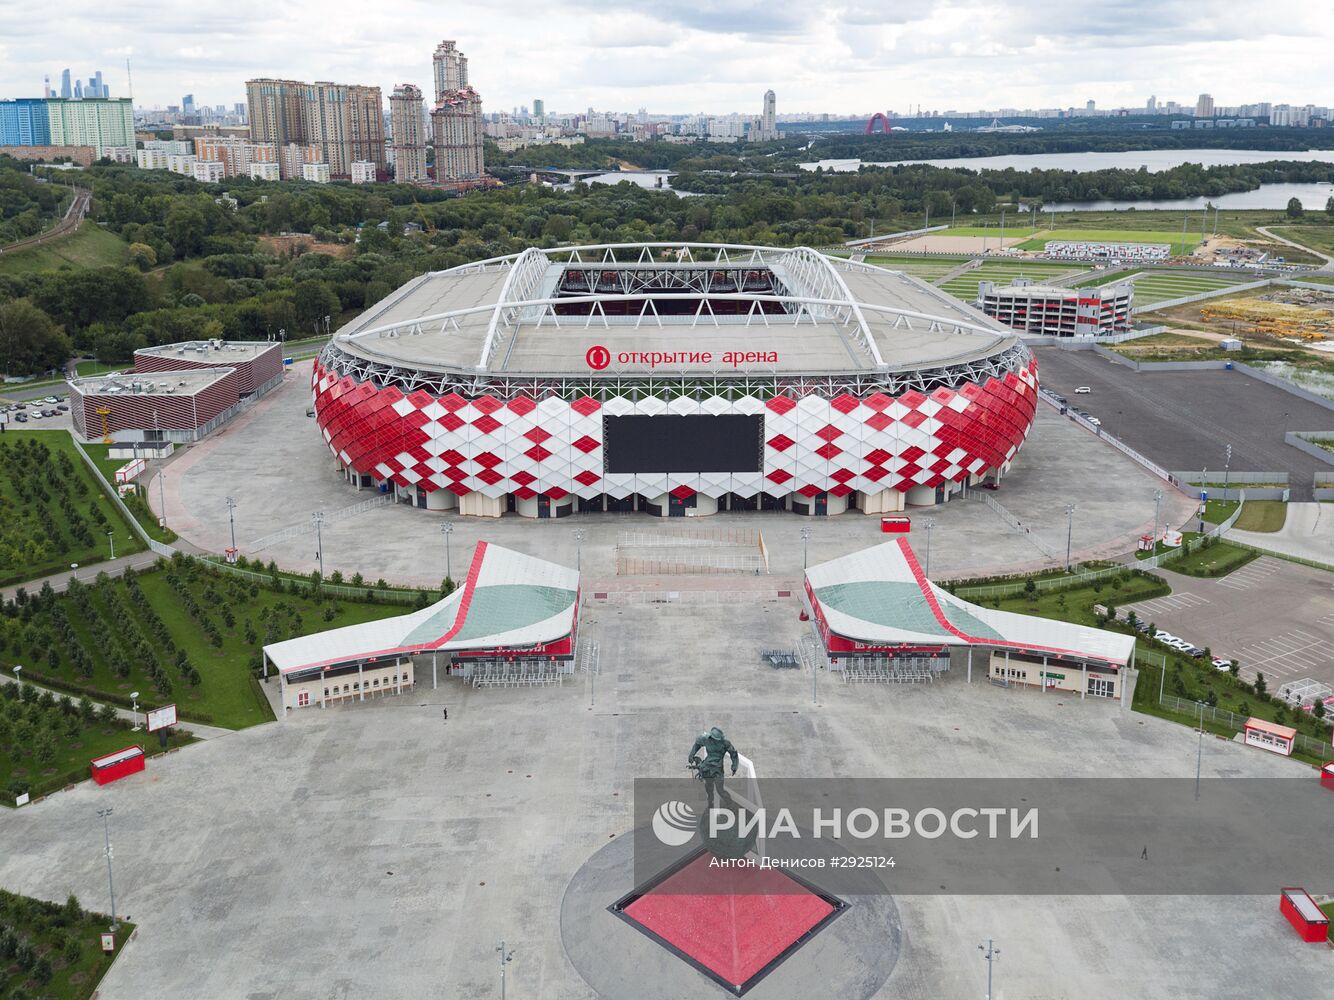 Стадион "Открытие Арена" в Москве